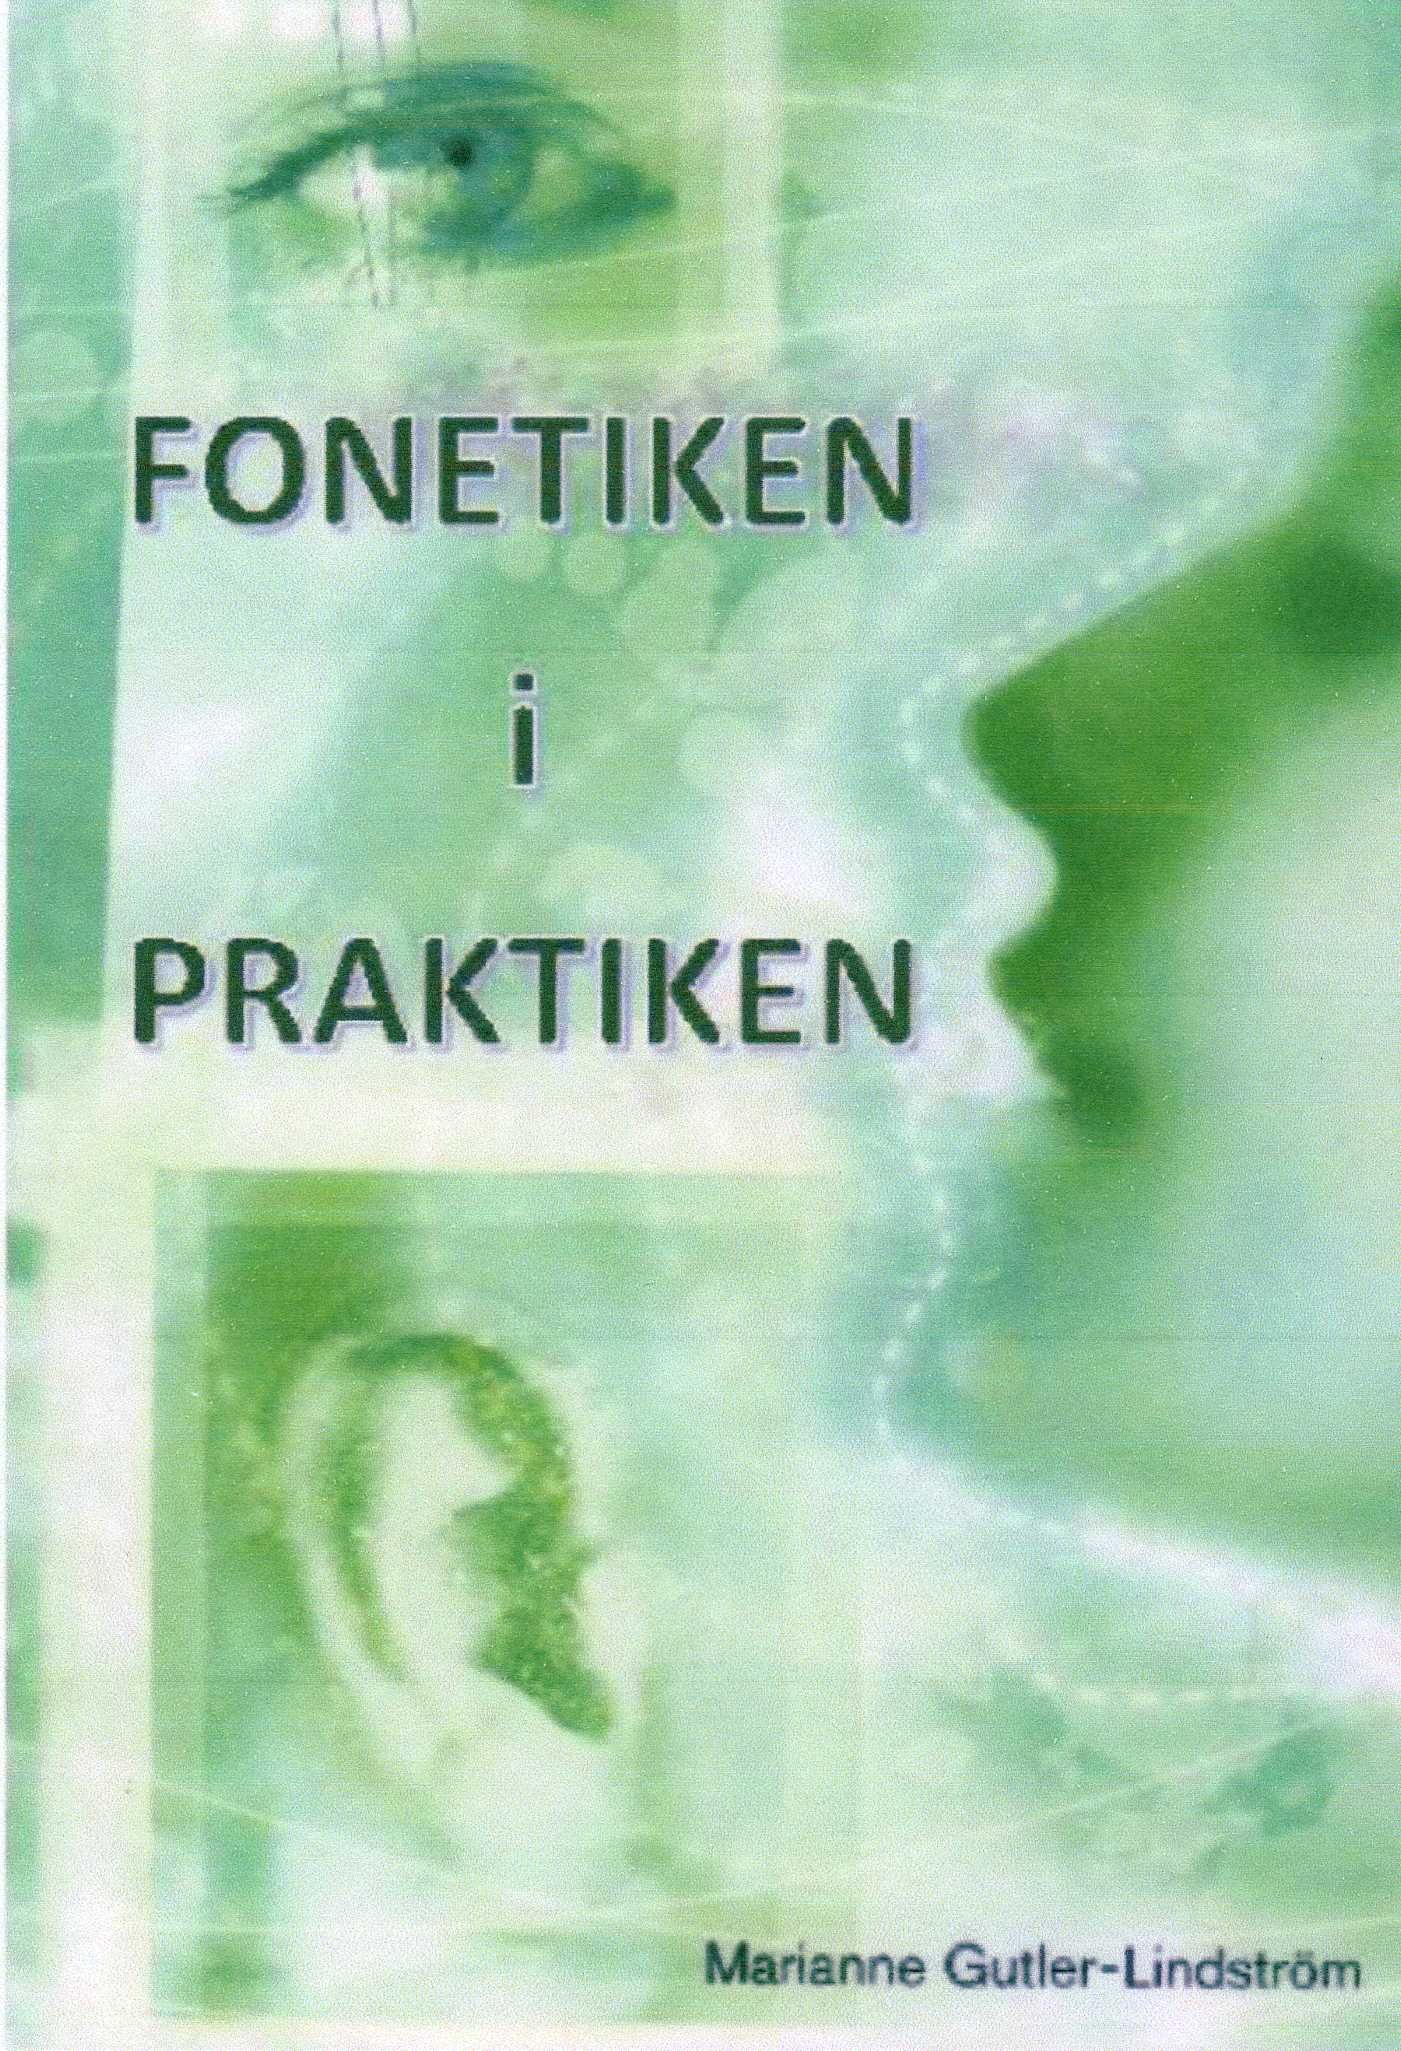 Fonetiken i praktiken, e-bok av Marianne Gutler Lindström